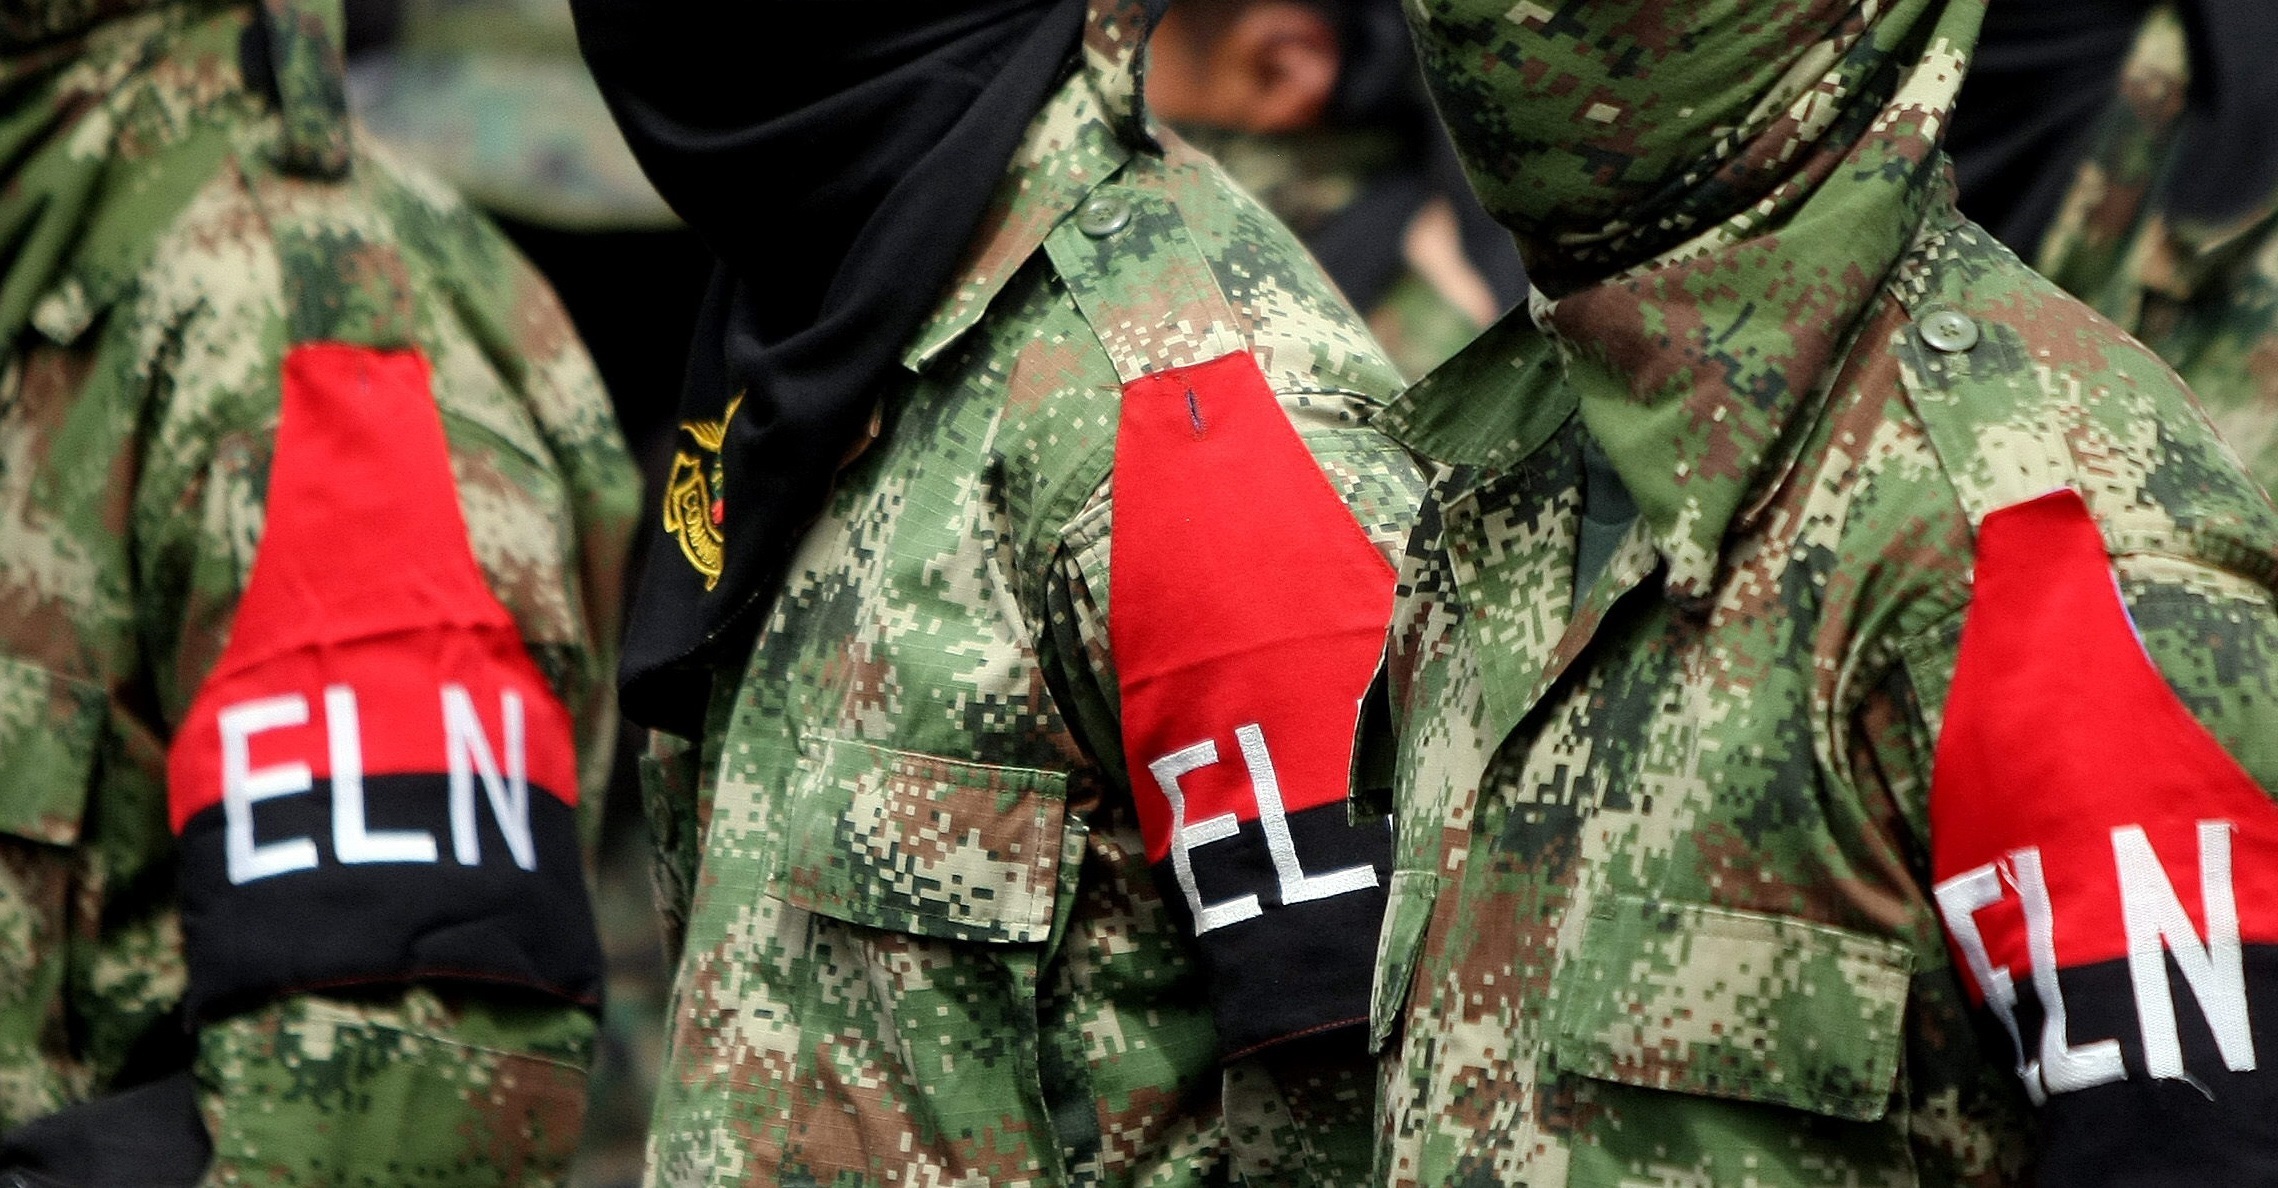 Ejército Nacional rescató a dos personas secuestradas por el ELN en Norte de Santander